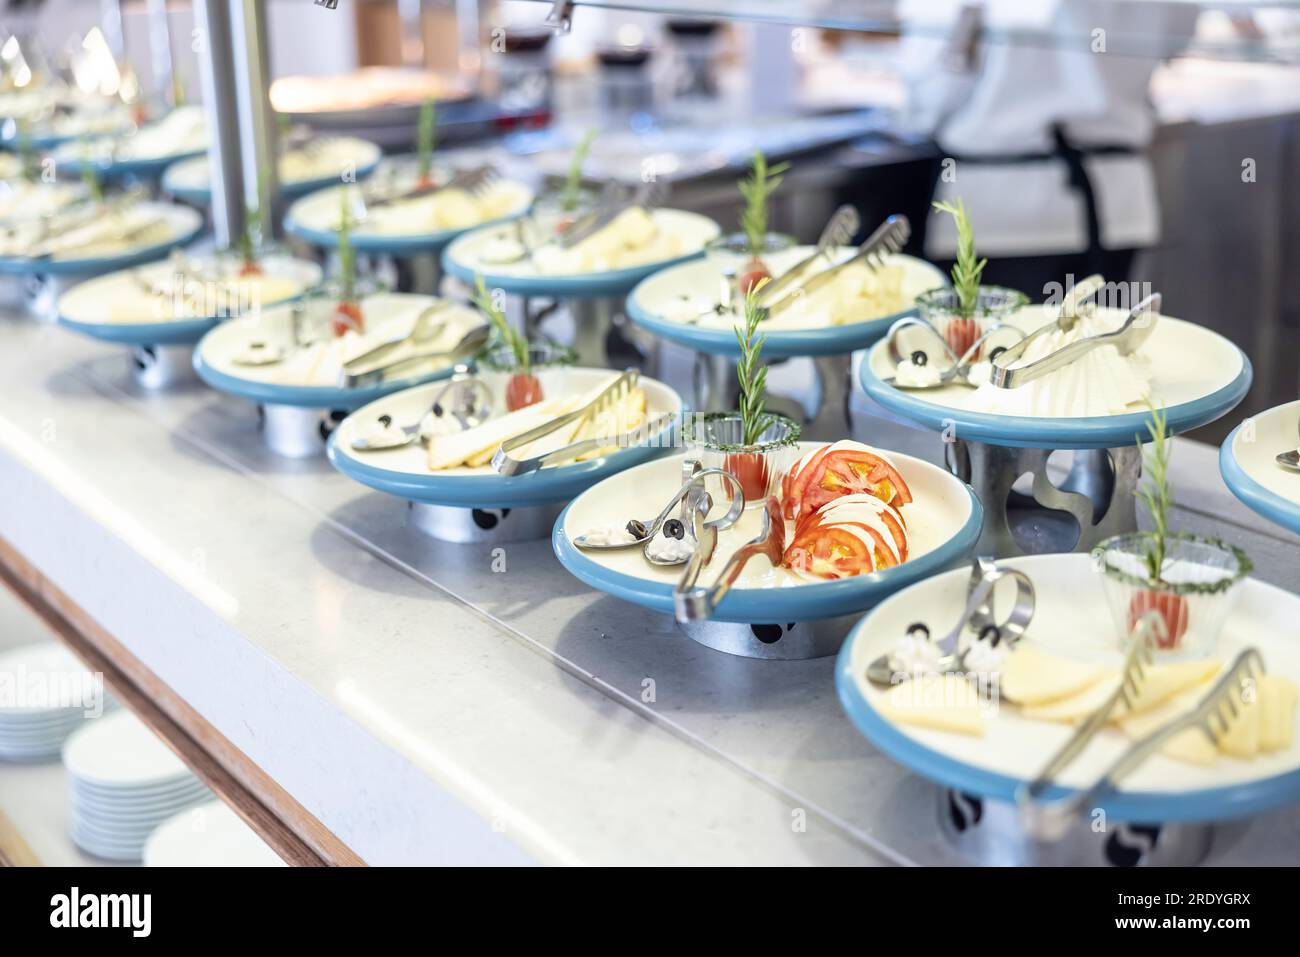 Stile creativo del tavolo a buffet nel ristorante dell'hotel. Pomodori con mozzarella e olive su un piatto, ha condotto altri piatti di formaggio ed erbe. Foto Stock